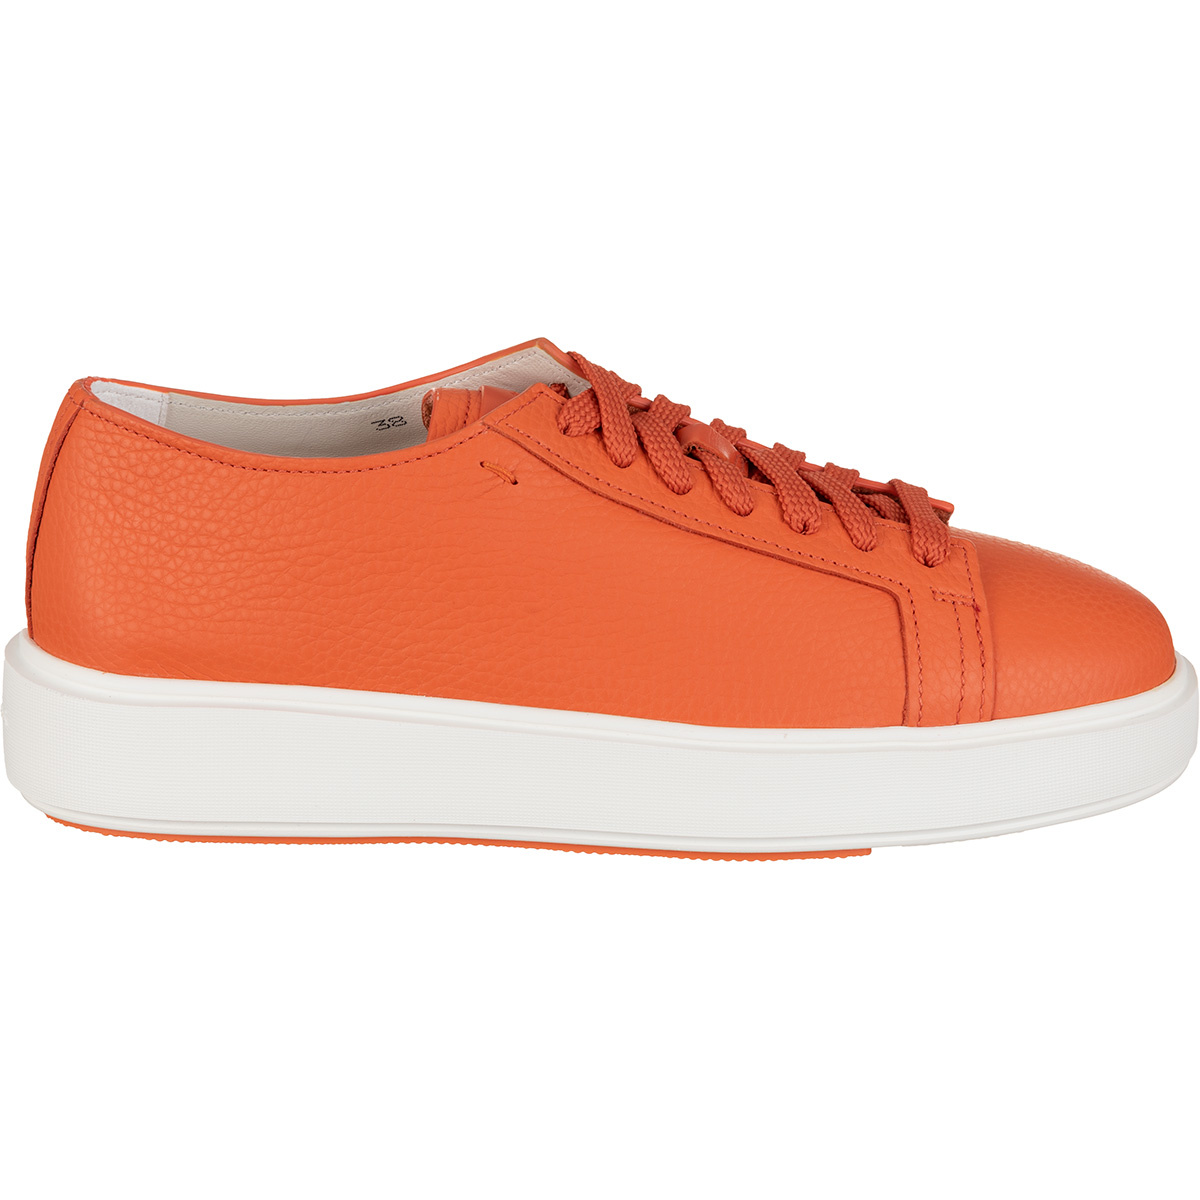 SANTONI - Sneakers orange - ORANGE - 38 | Oberrauch Zitt